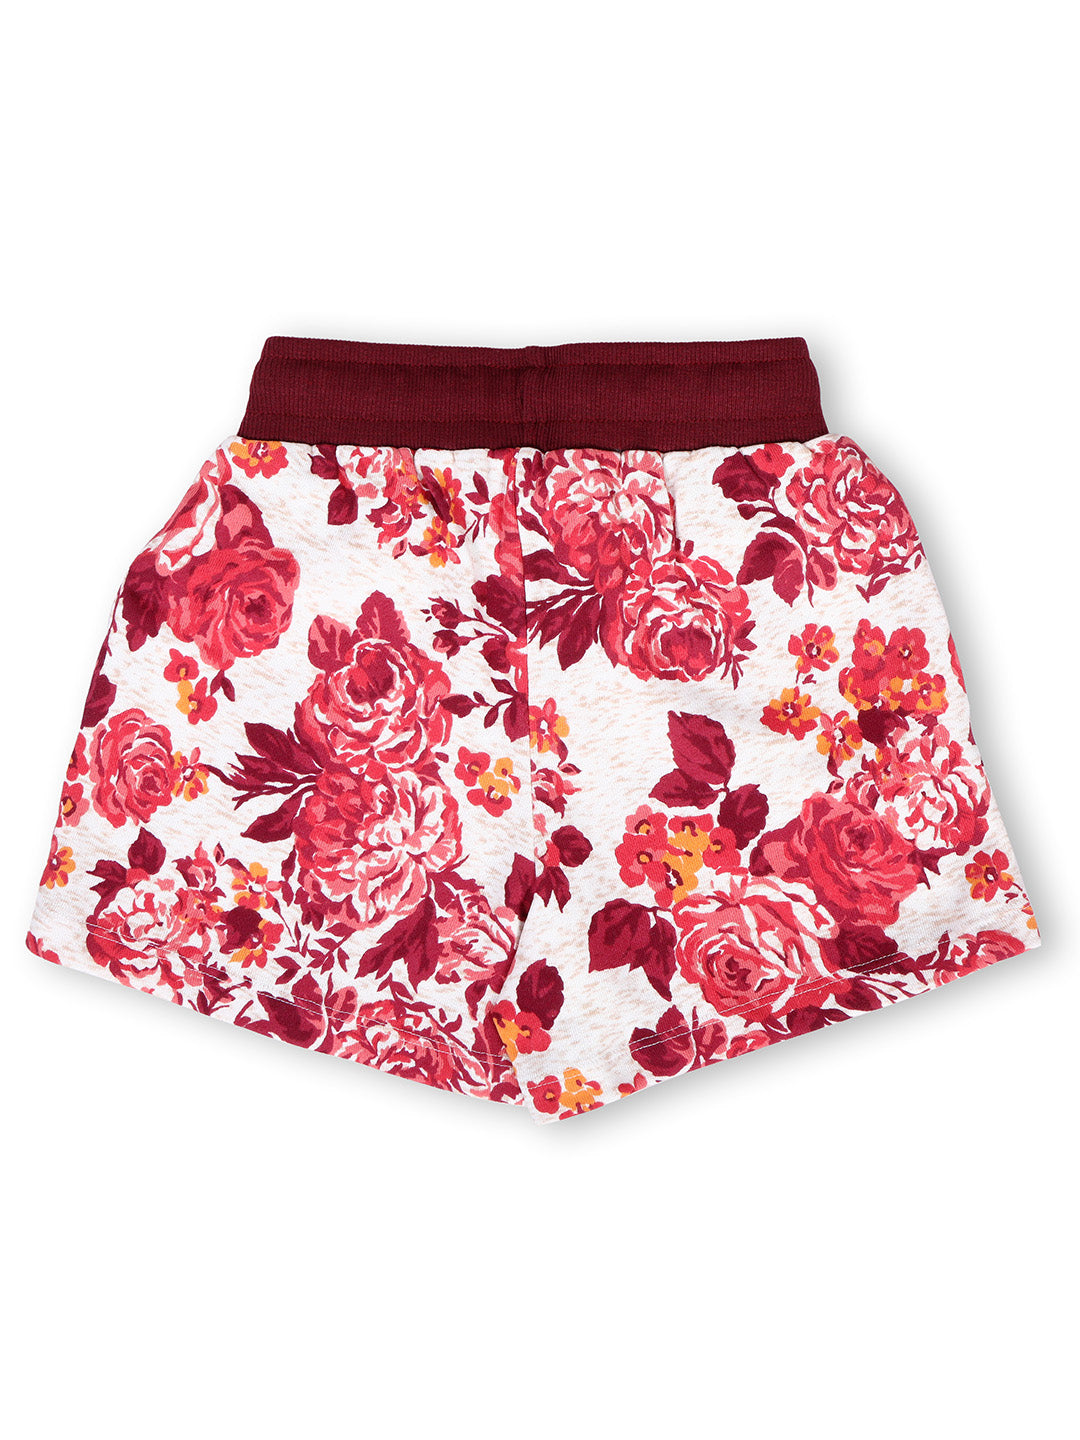 TWGE - Kids Shorts for Girls - Short Pants - Printed Regular Fit Half Pants - Color White